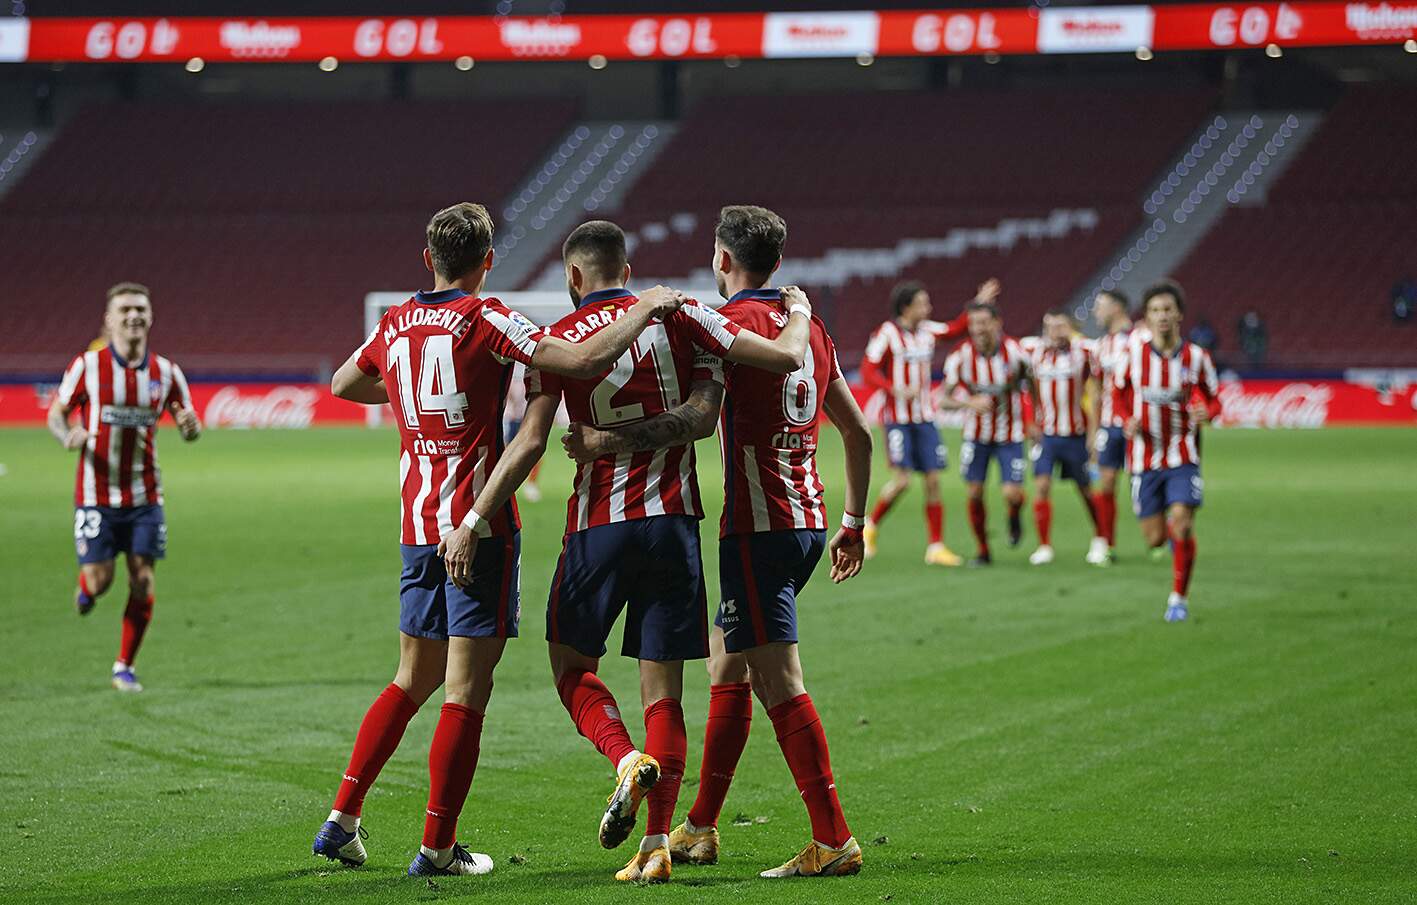 Único time invicto na competição, o Atlético de Madrid foi aos 20 pontos